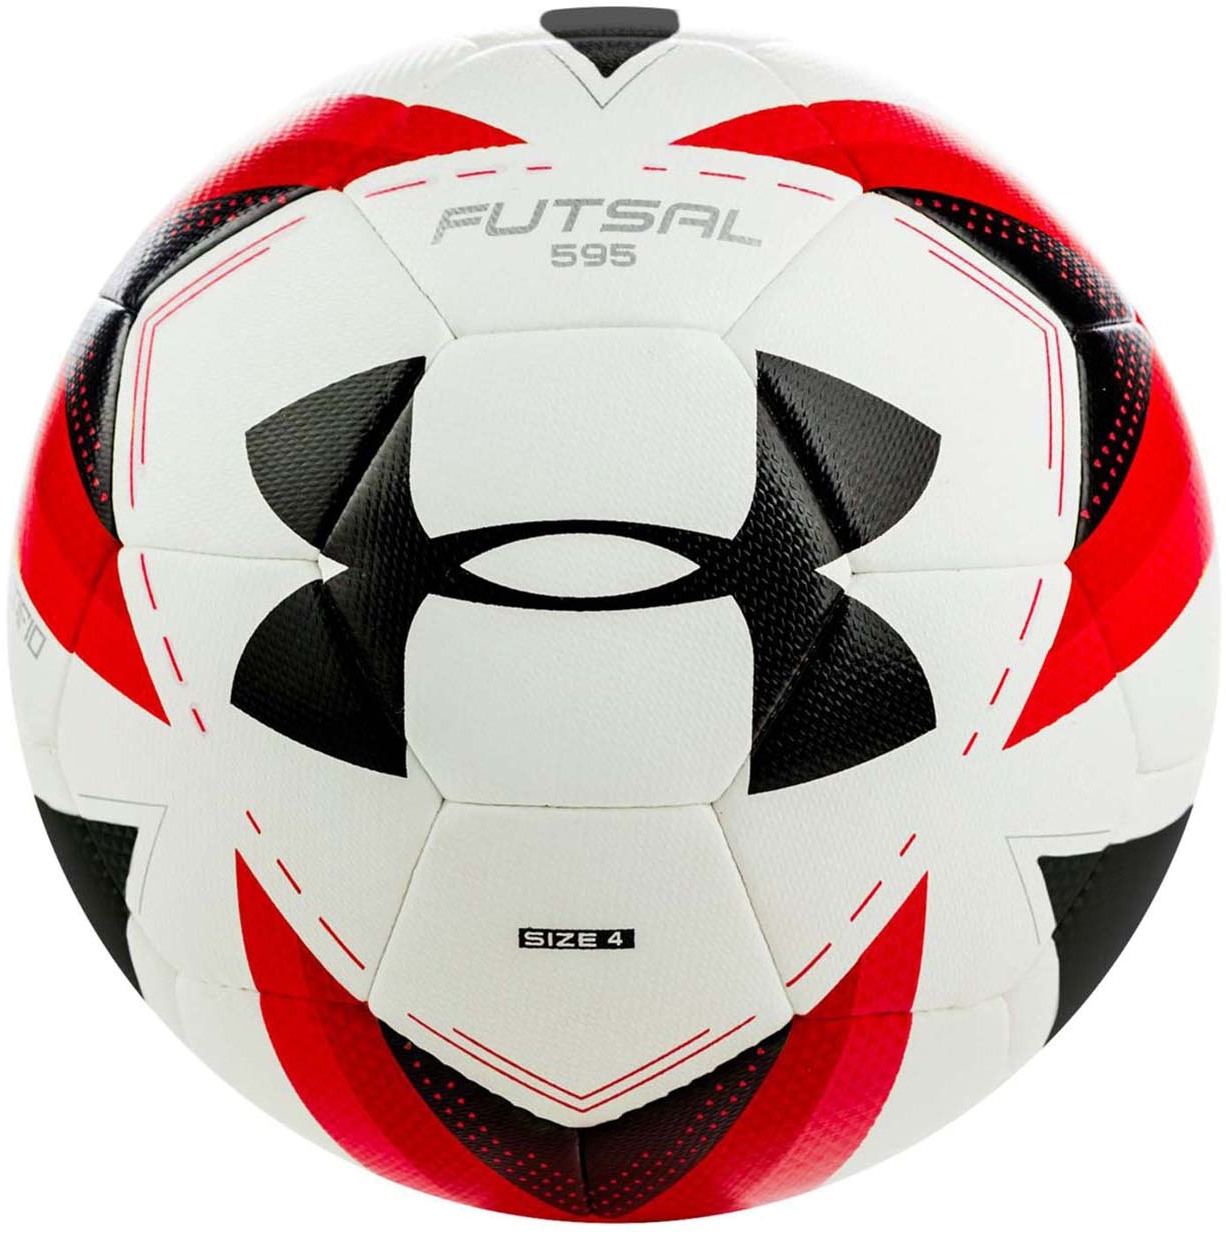 Футбольный мяч Under Armour Futsal 595 1311163-100